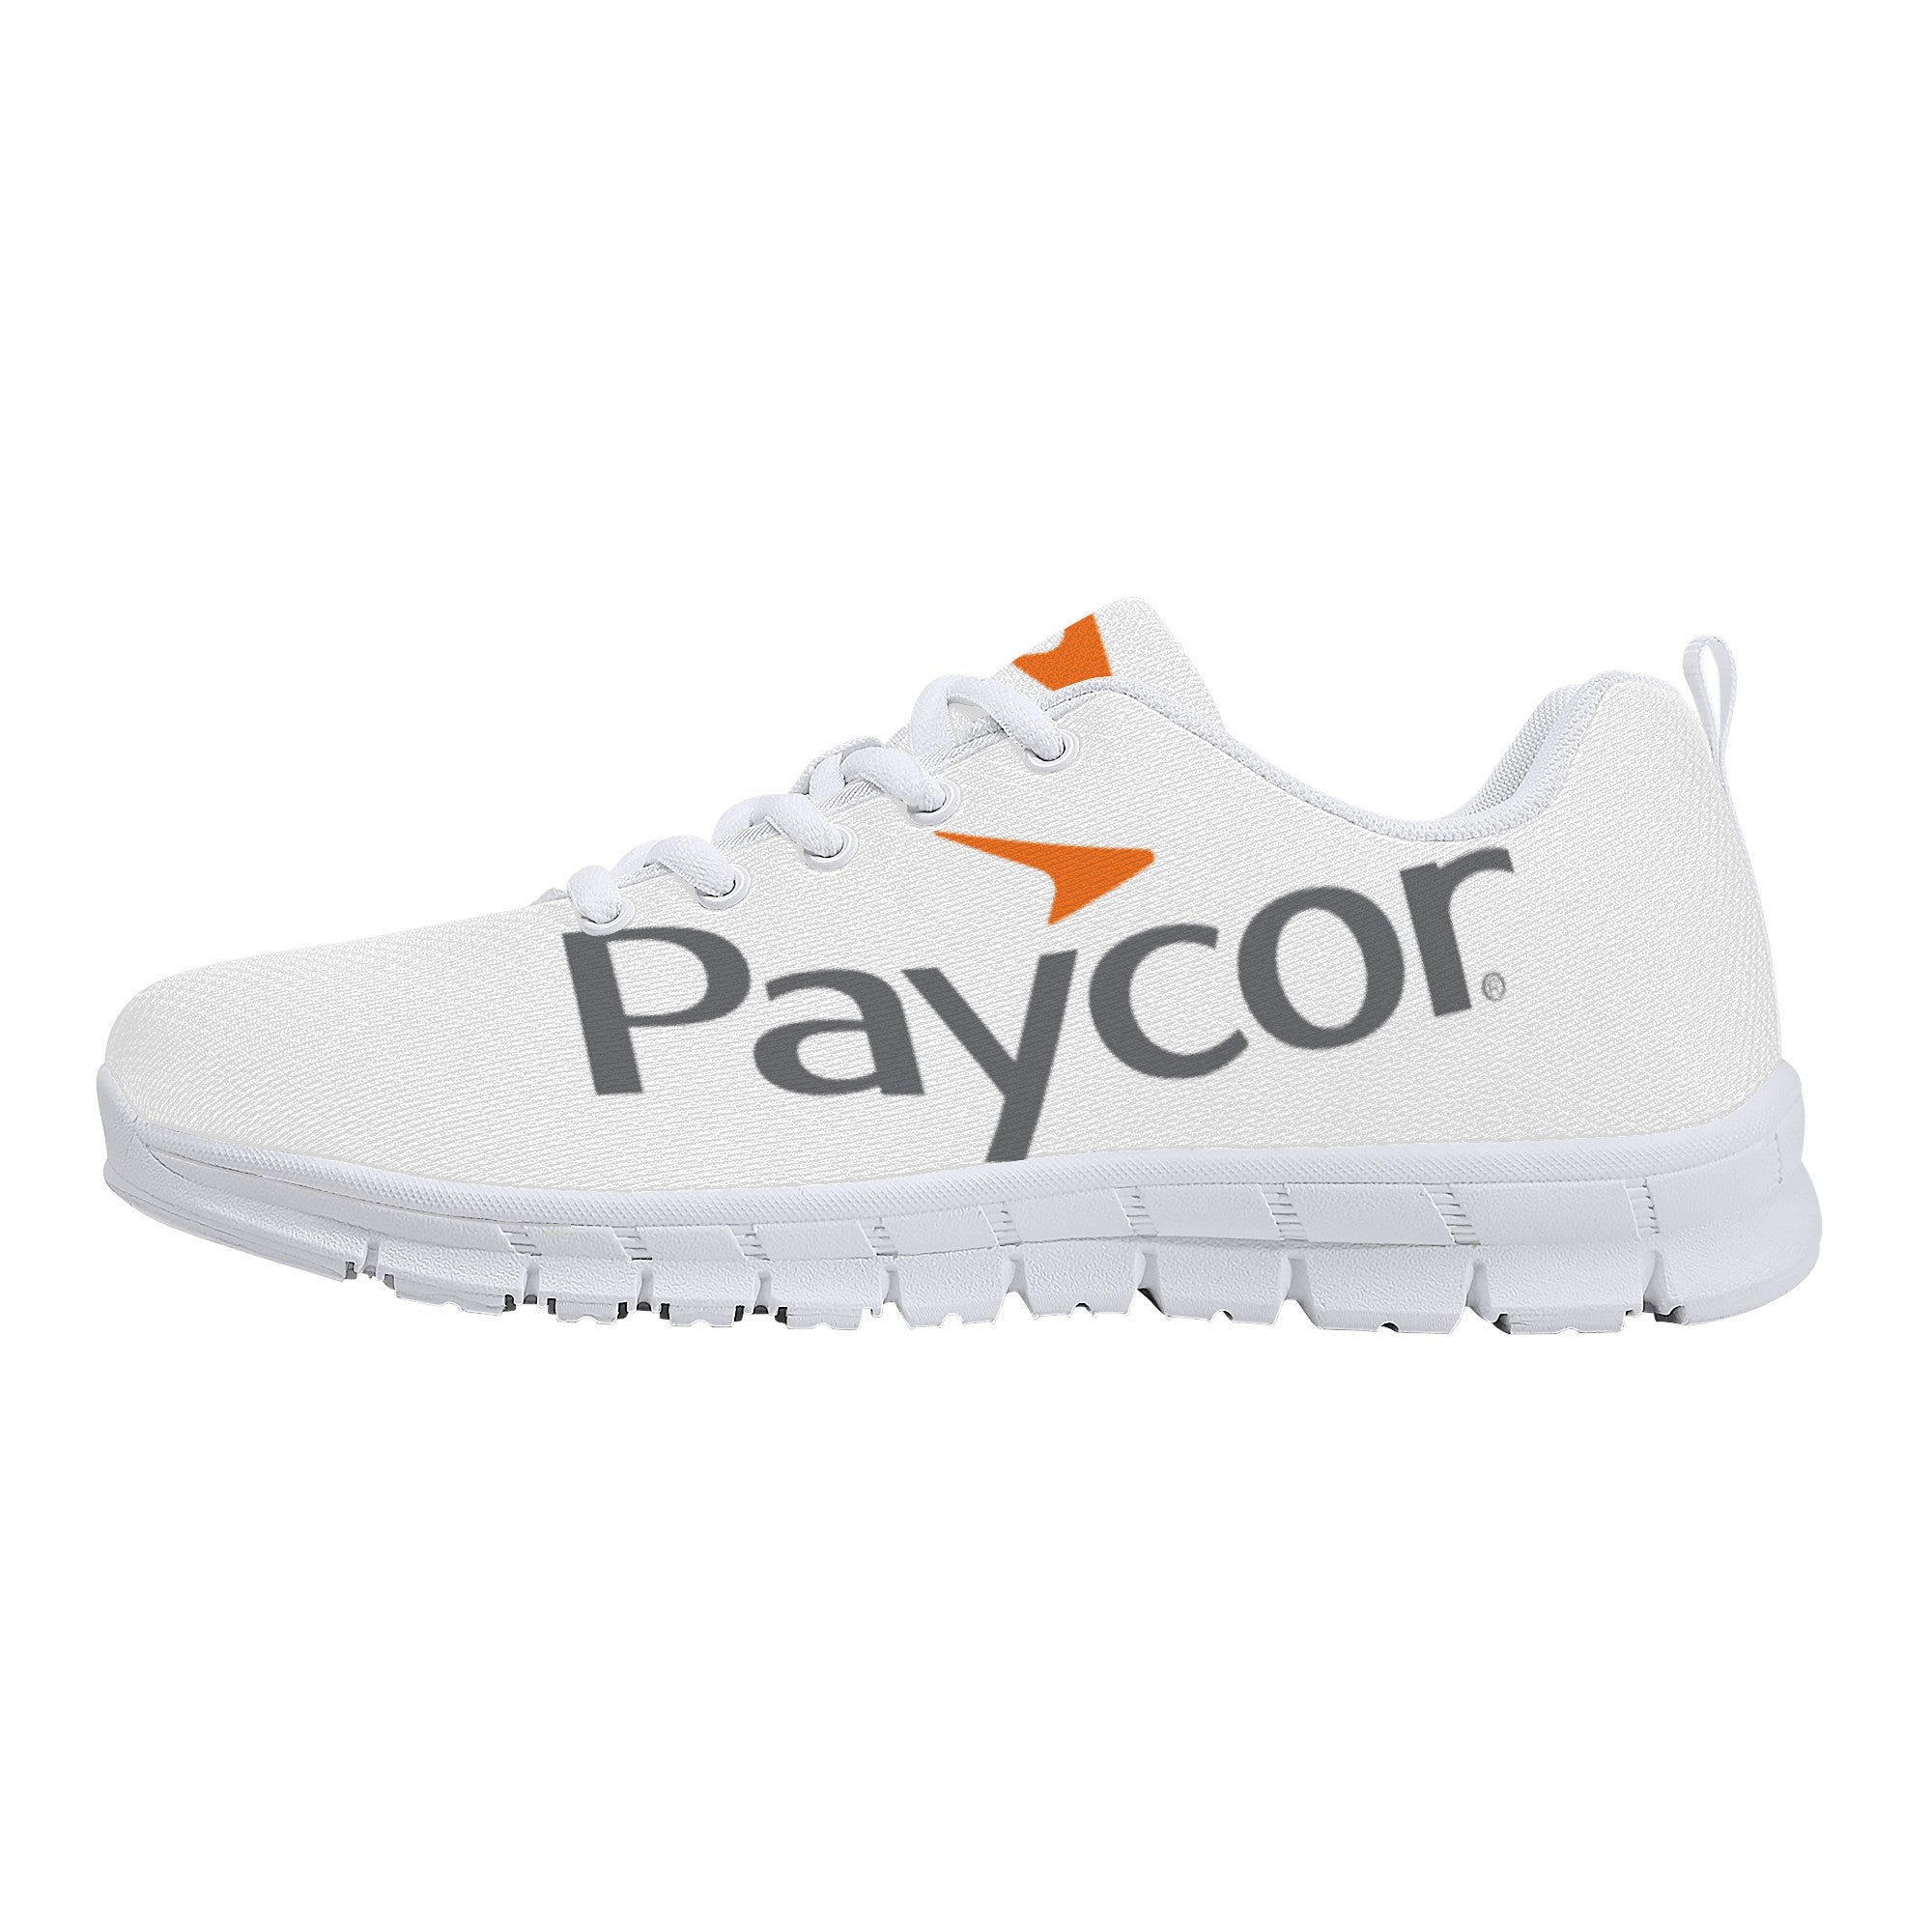 Paycor Sneakers - White - Shoe Zero